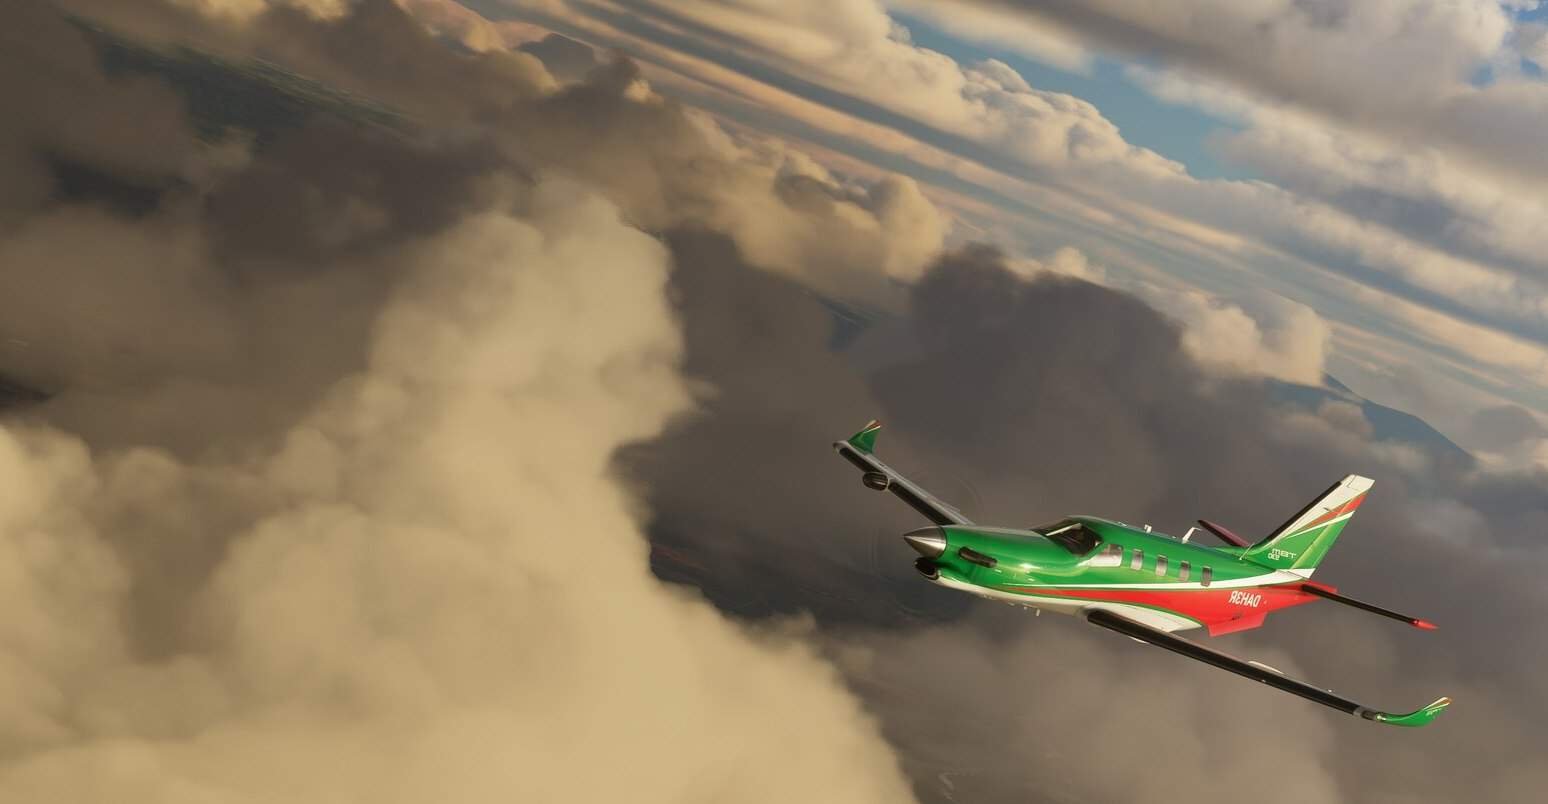 Microsoft Flight Simulator List Of Unique Airports And Scenery Glitches - boring simulator roblox